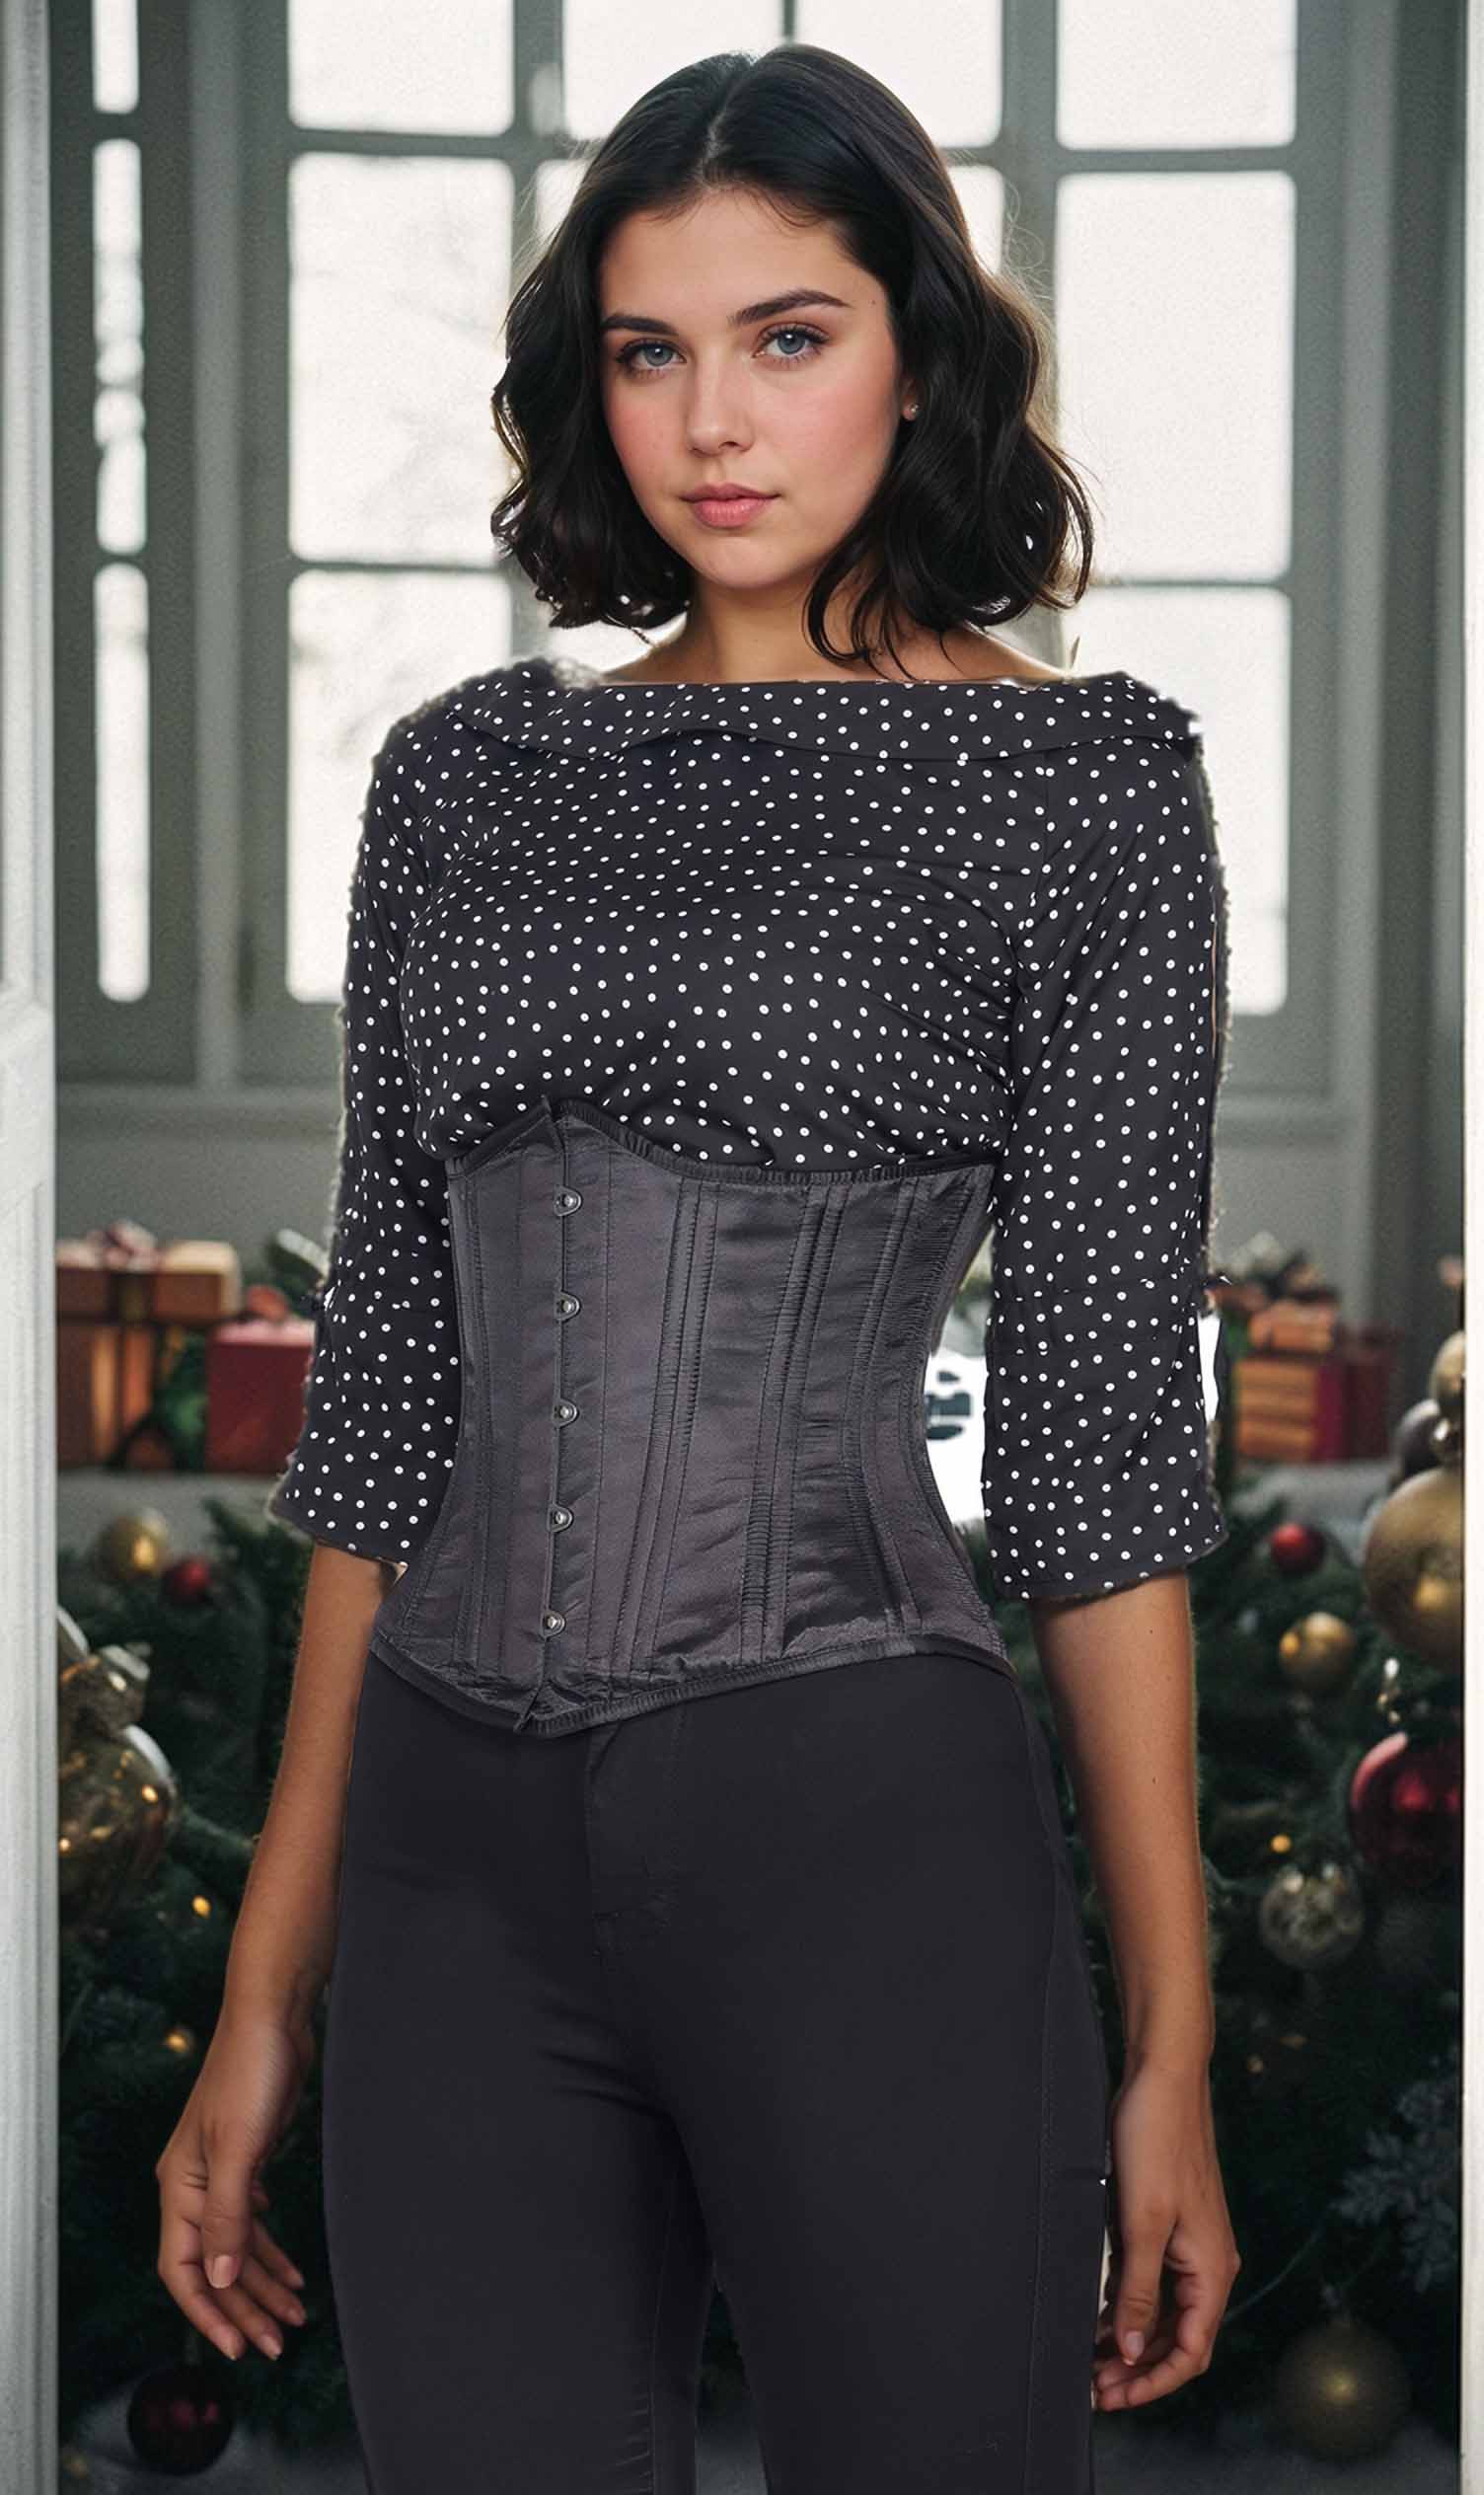 https://www.corsetdeal.com/cdn/shop/files/WT-001_F_Bespoke_Corset_Corsetdeal_Corset_Waist_Training_Corset_e5a1cffa-1051-4bd3-bb29-53466c34b282.jpg?v=1706510305